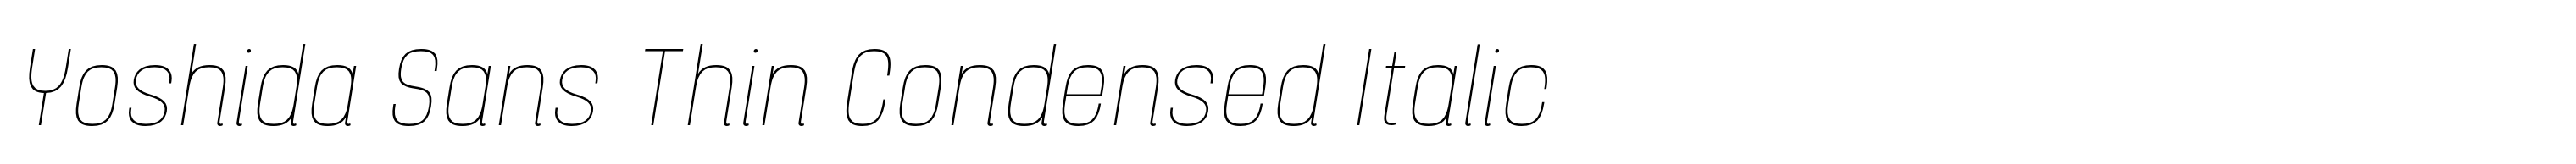 Yoshida Sans Thin Condensed Italic